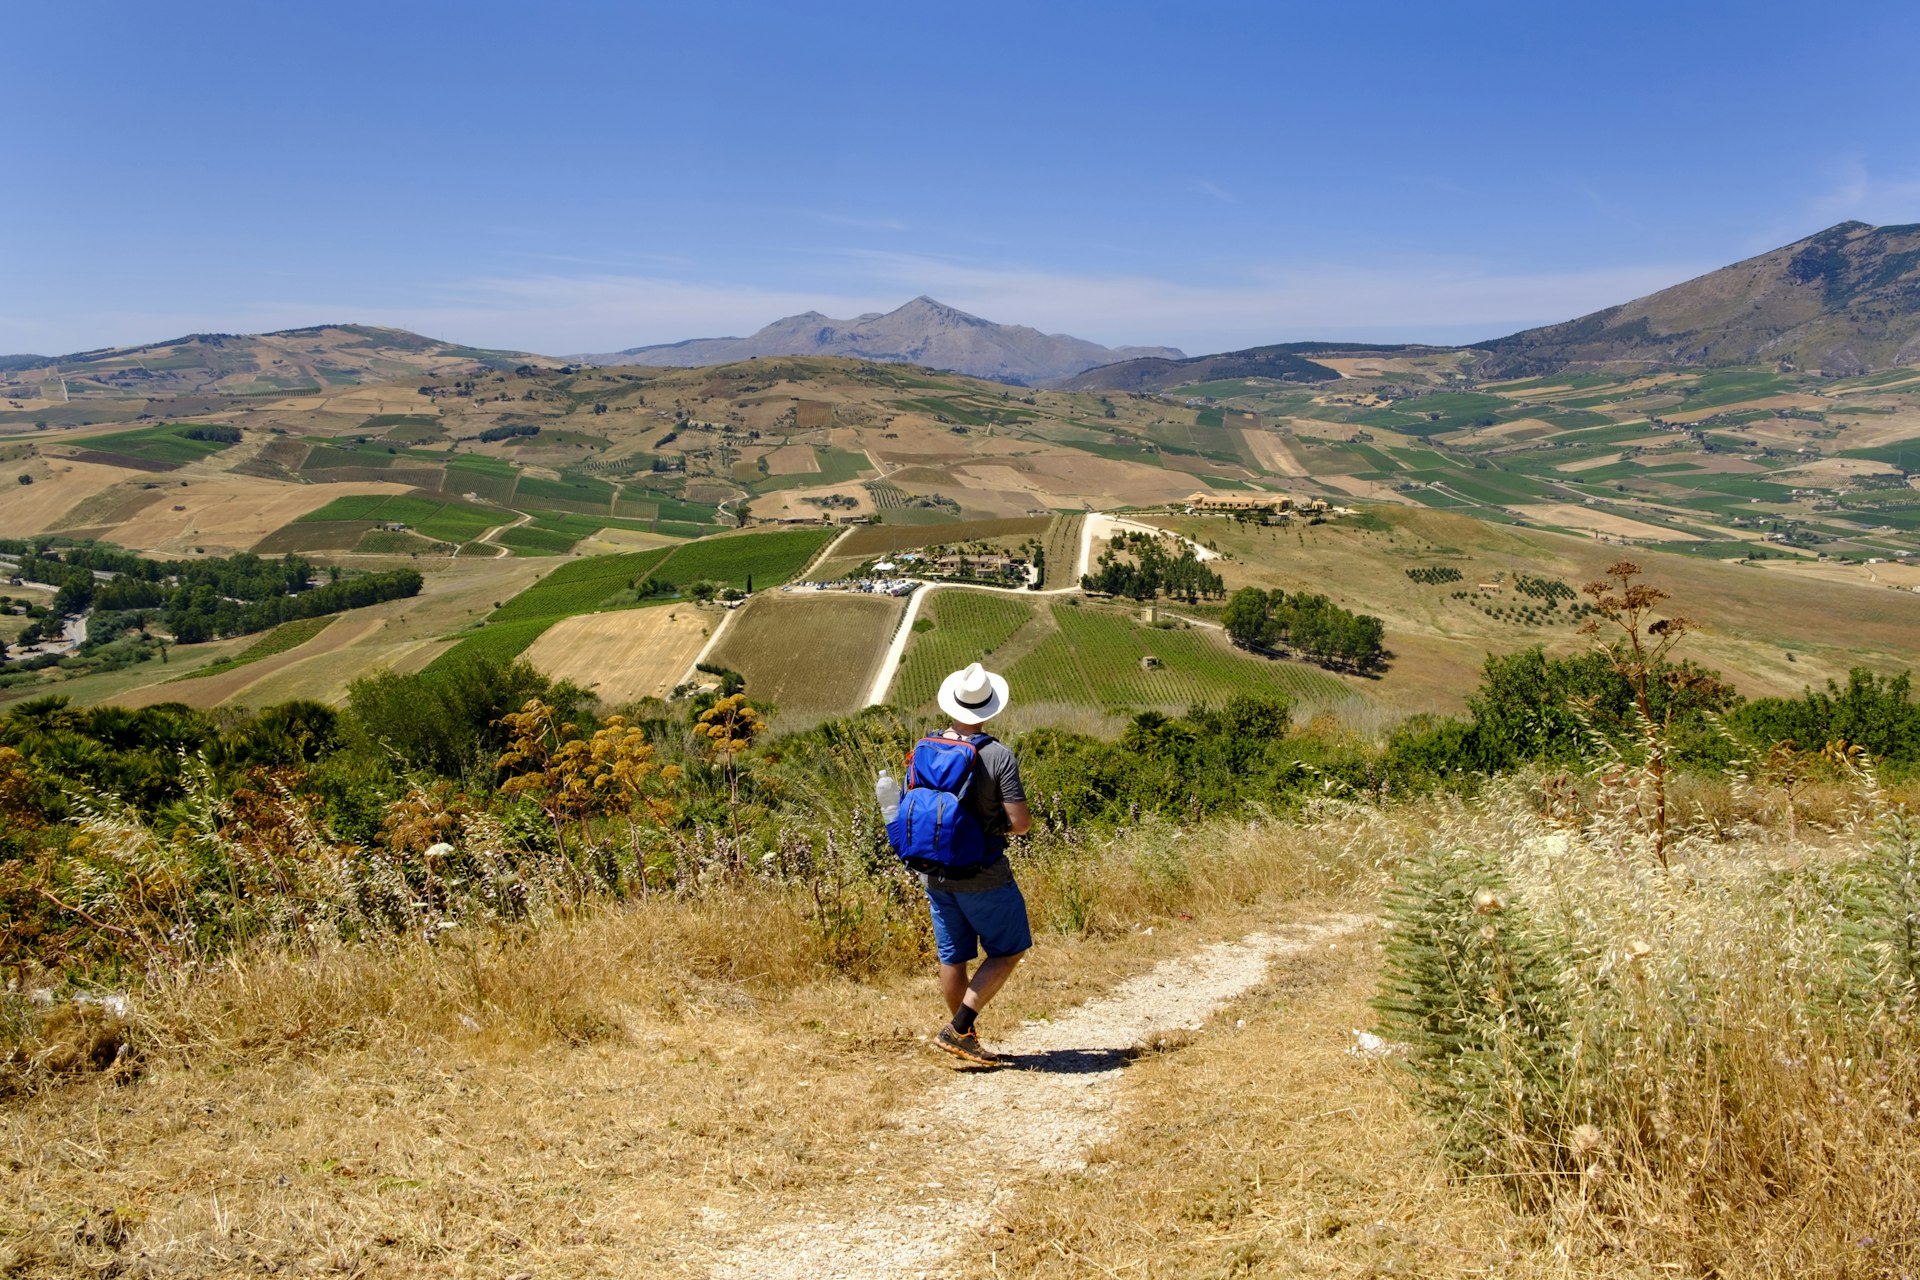 Uma pessoa usando um chapéu branco caminha por uma trilha com vista para a zona rural perto de Segesta, Itália